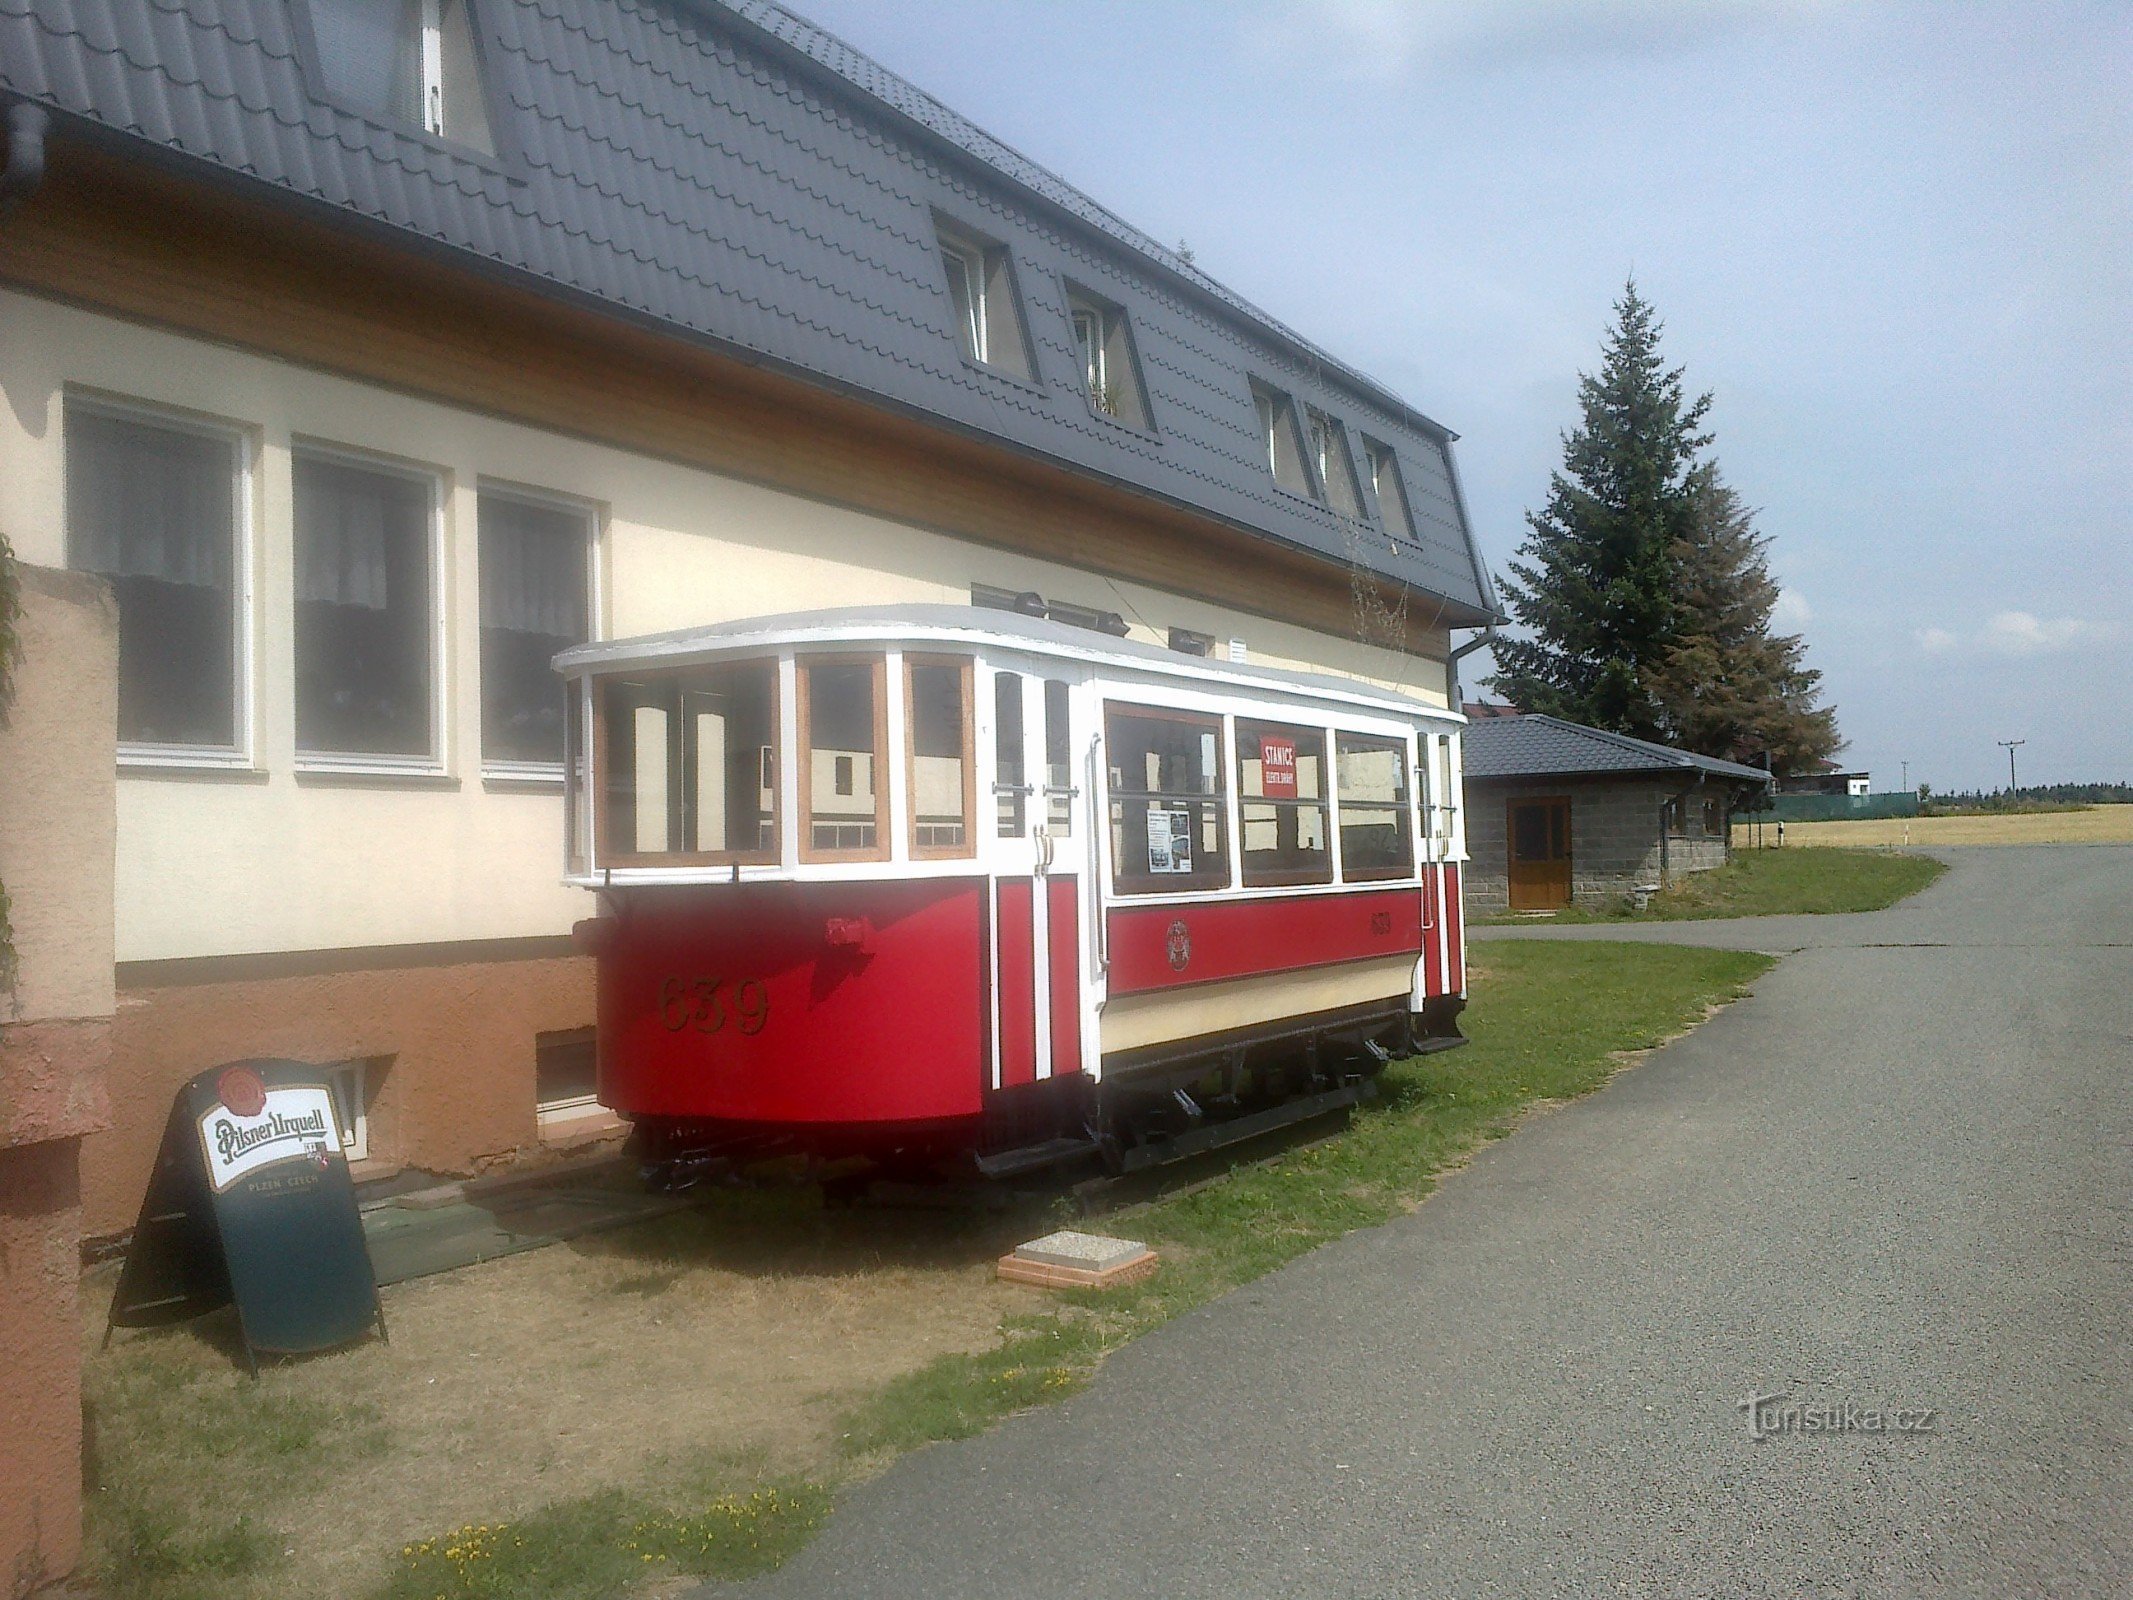 Tram on the Drahanská vrchovina